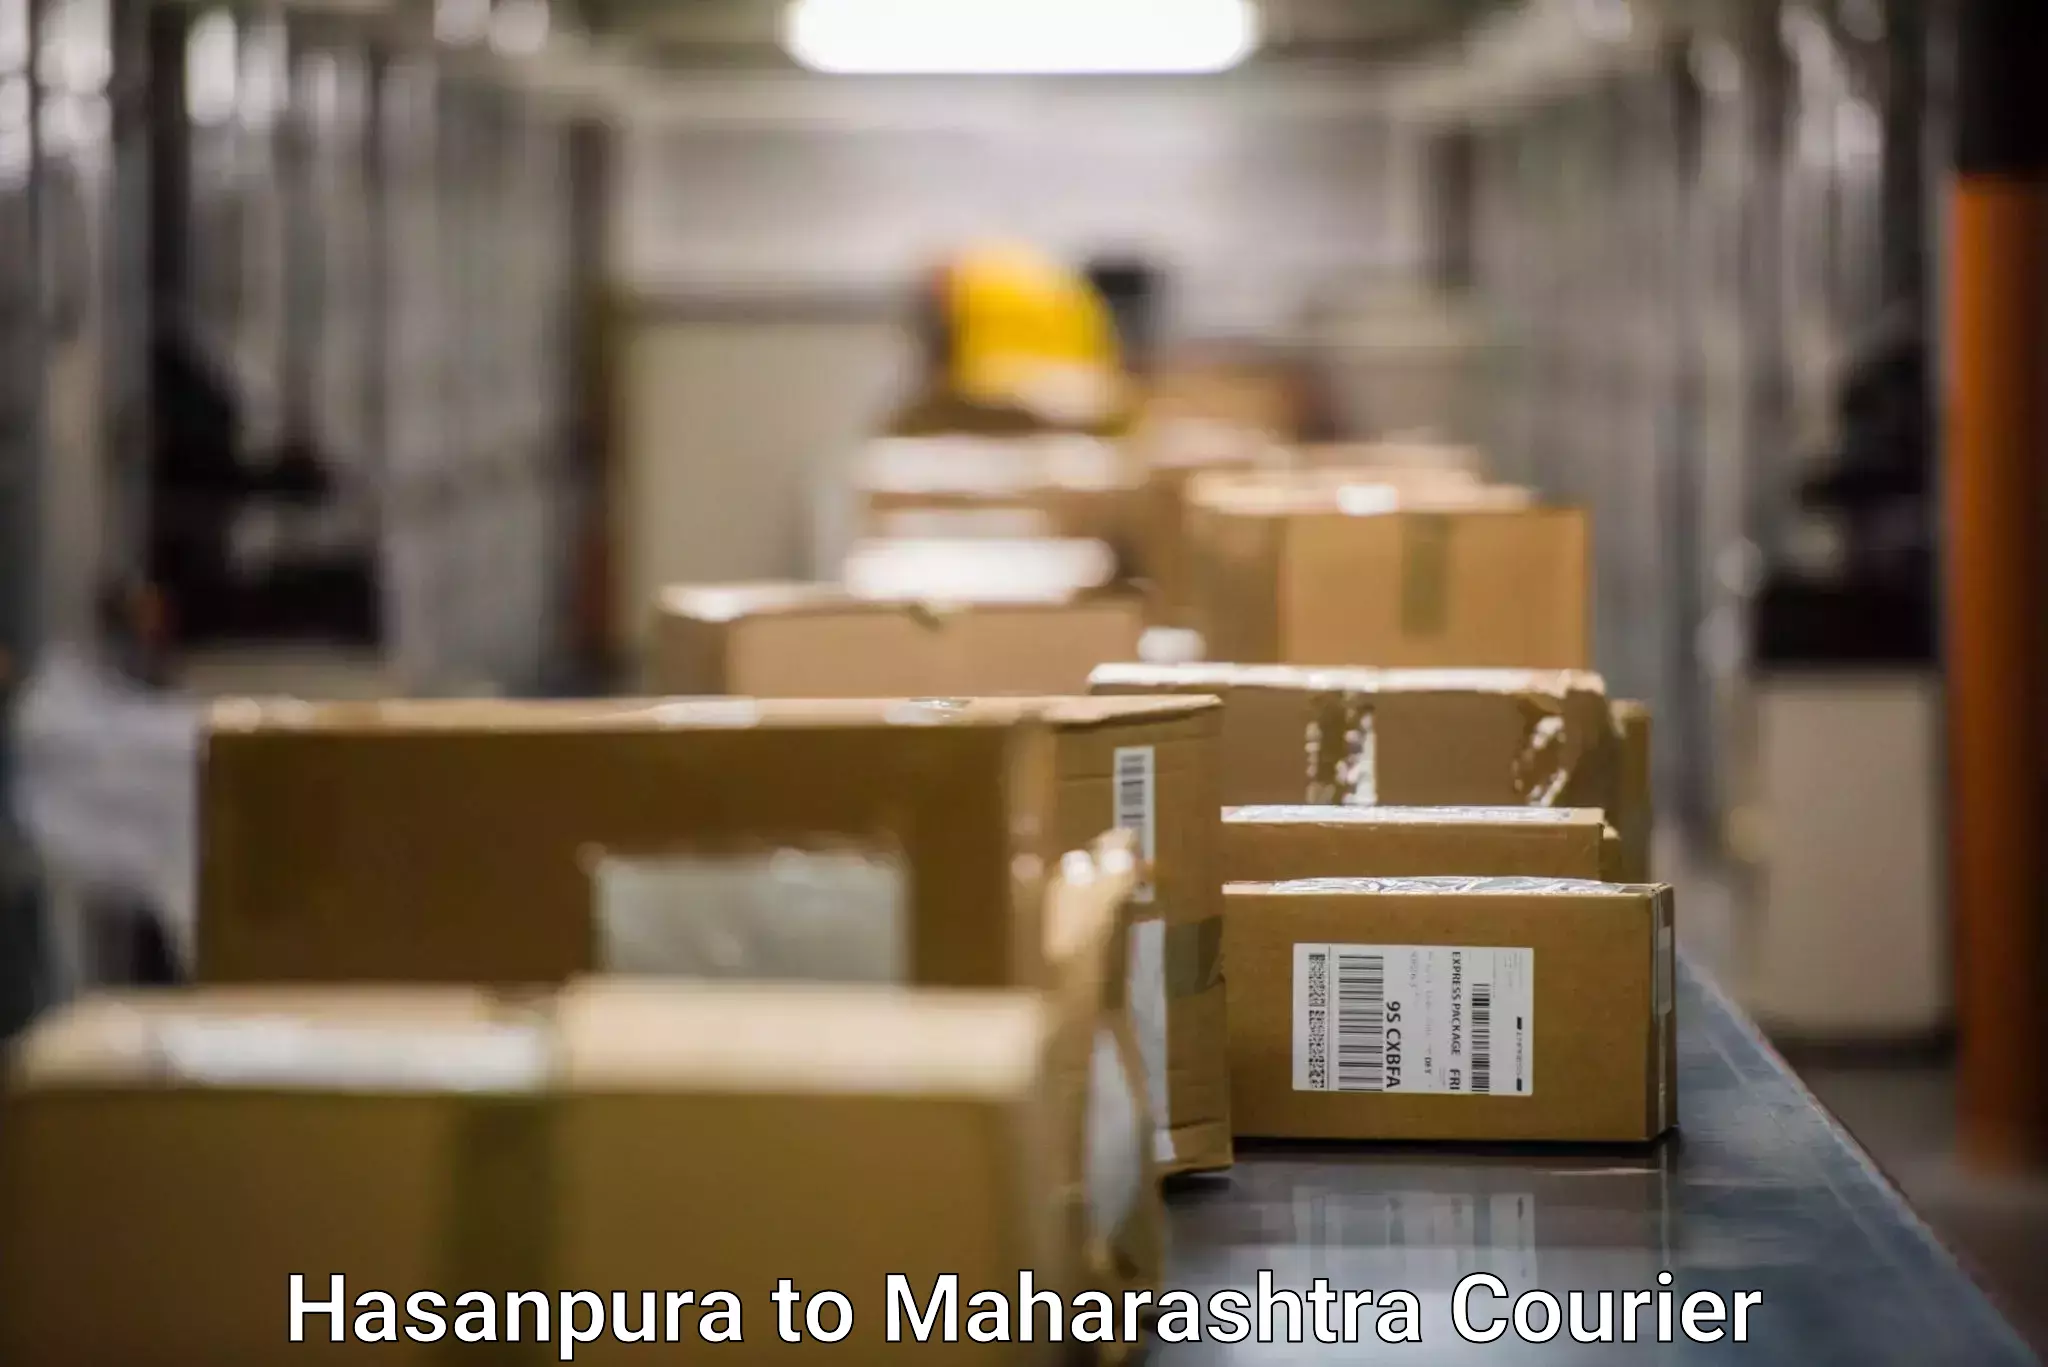 Urban courier service Hasanpura to Maharashtra